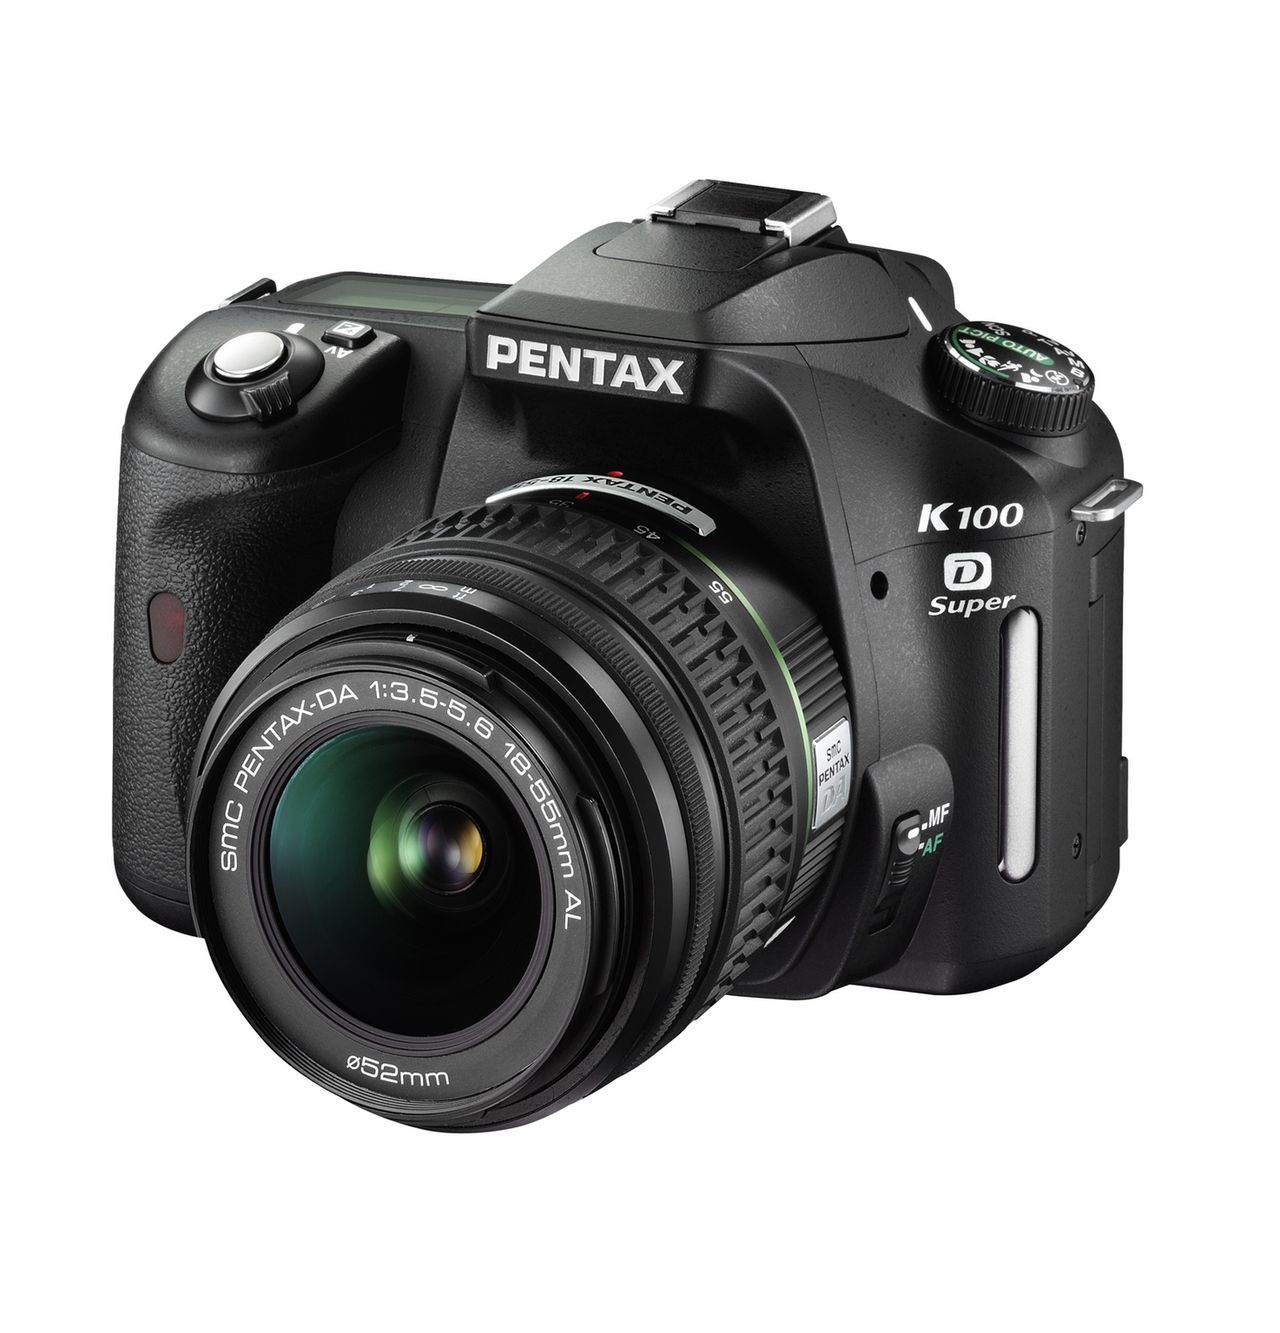 Pentax K100D Super to model wprowadzający minimalne zmiany w stosunku do siostrzanej lustrzanki Pentax K100D